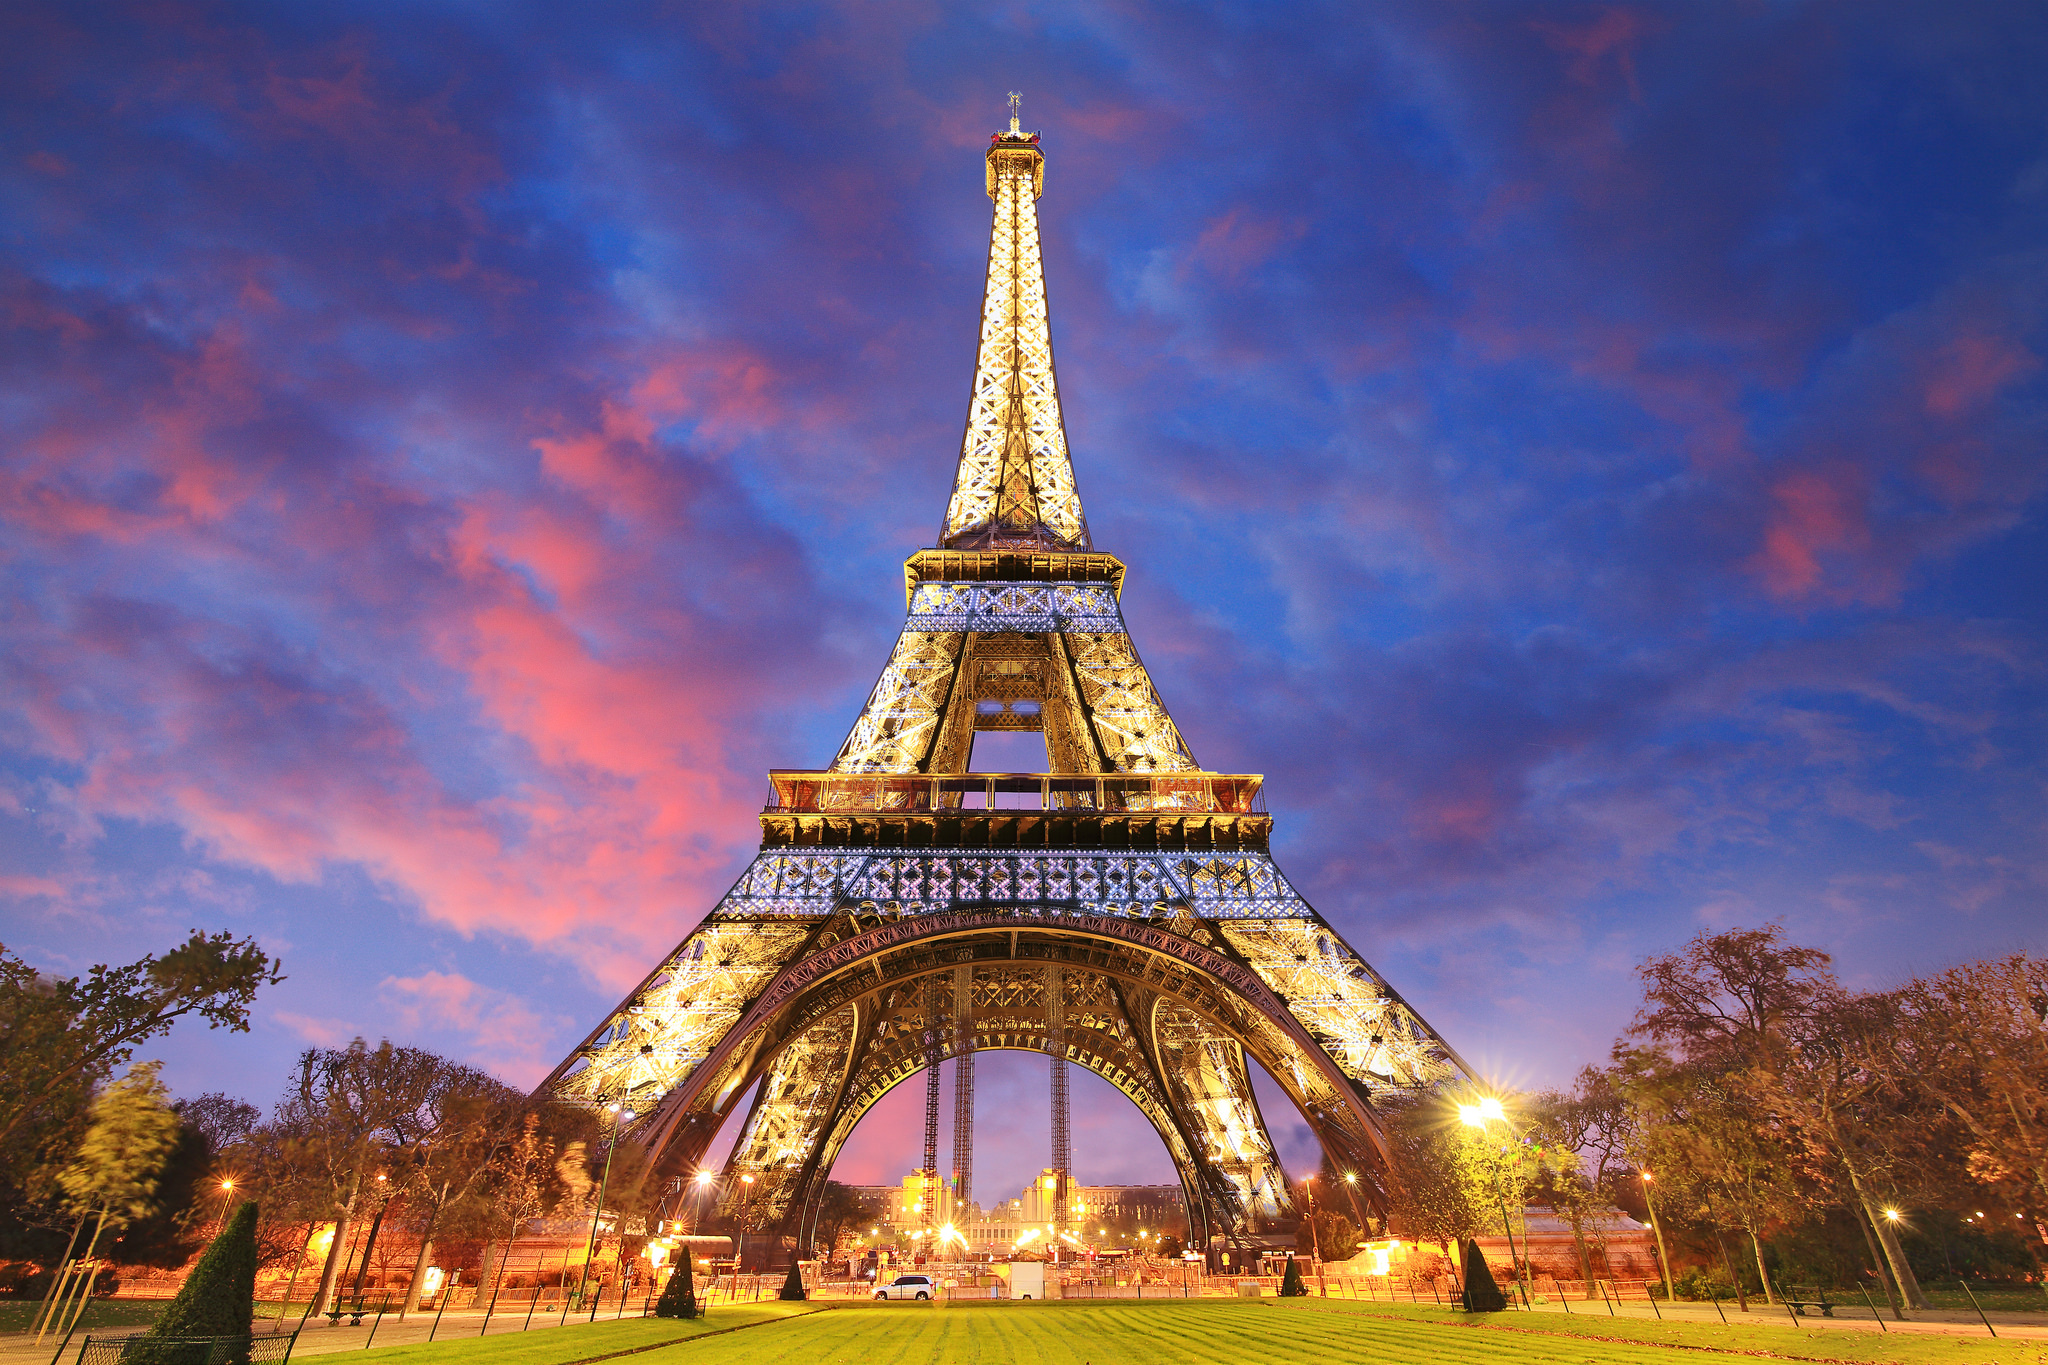 Tổng Hợp 50+ Hình Ảnh Tháp Eiffel Đẹp, Lộng Lấy, Hùng Vĩ Nhất 2